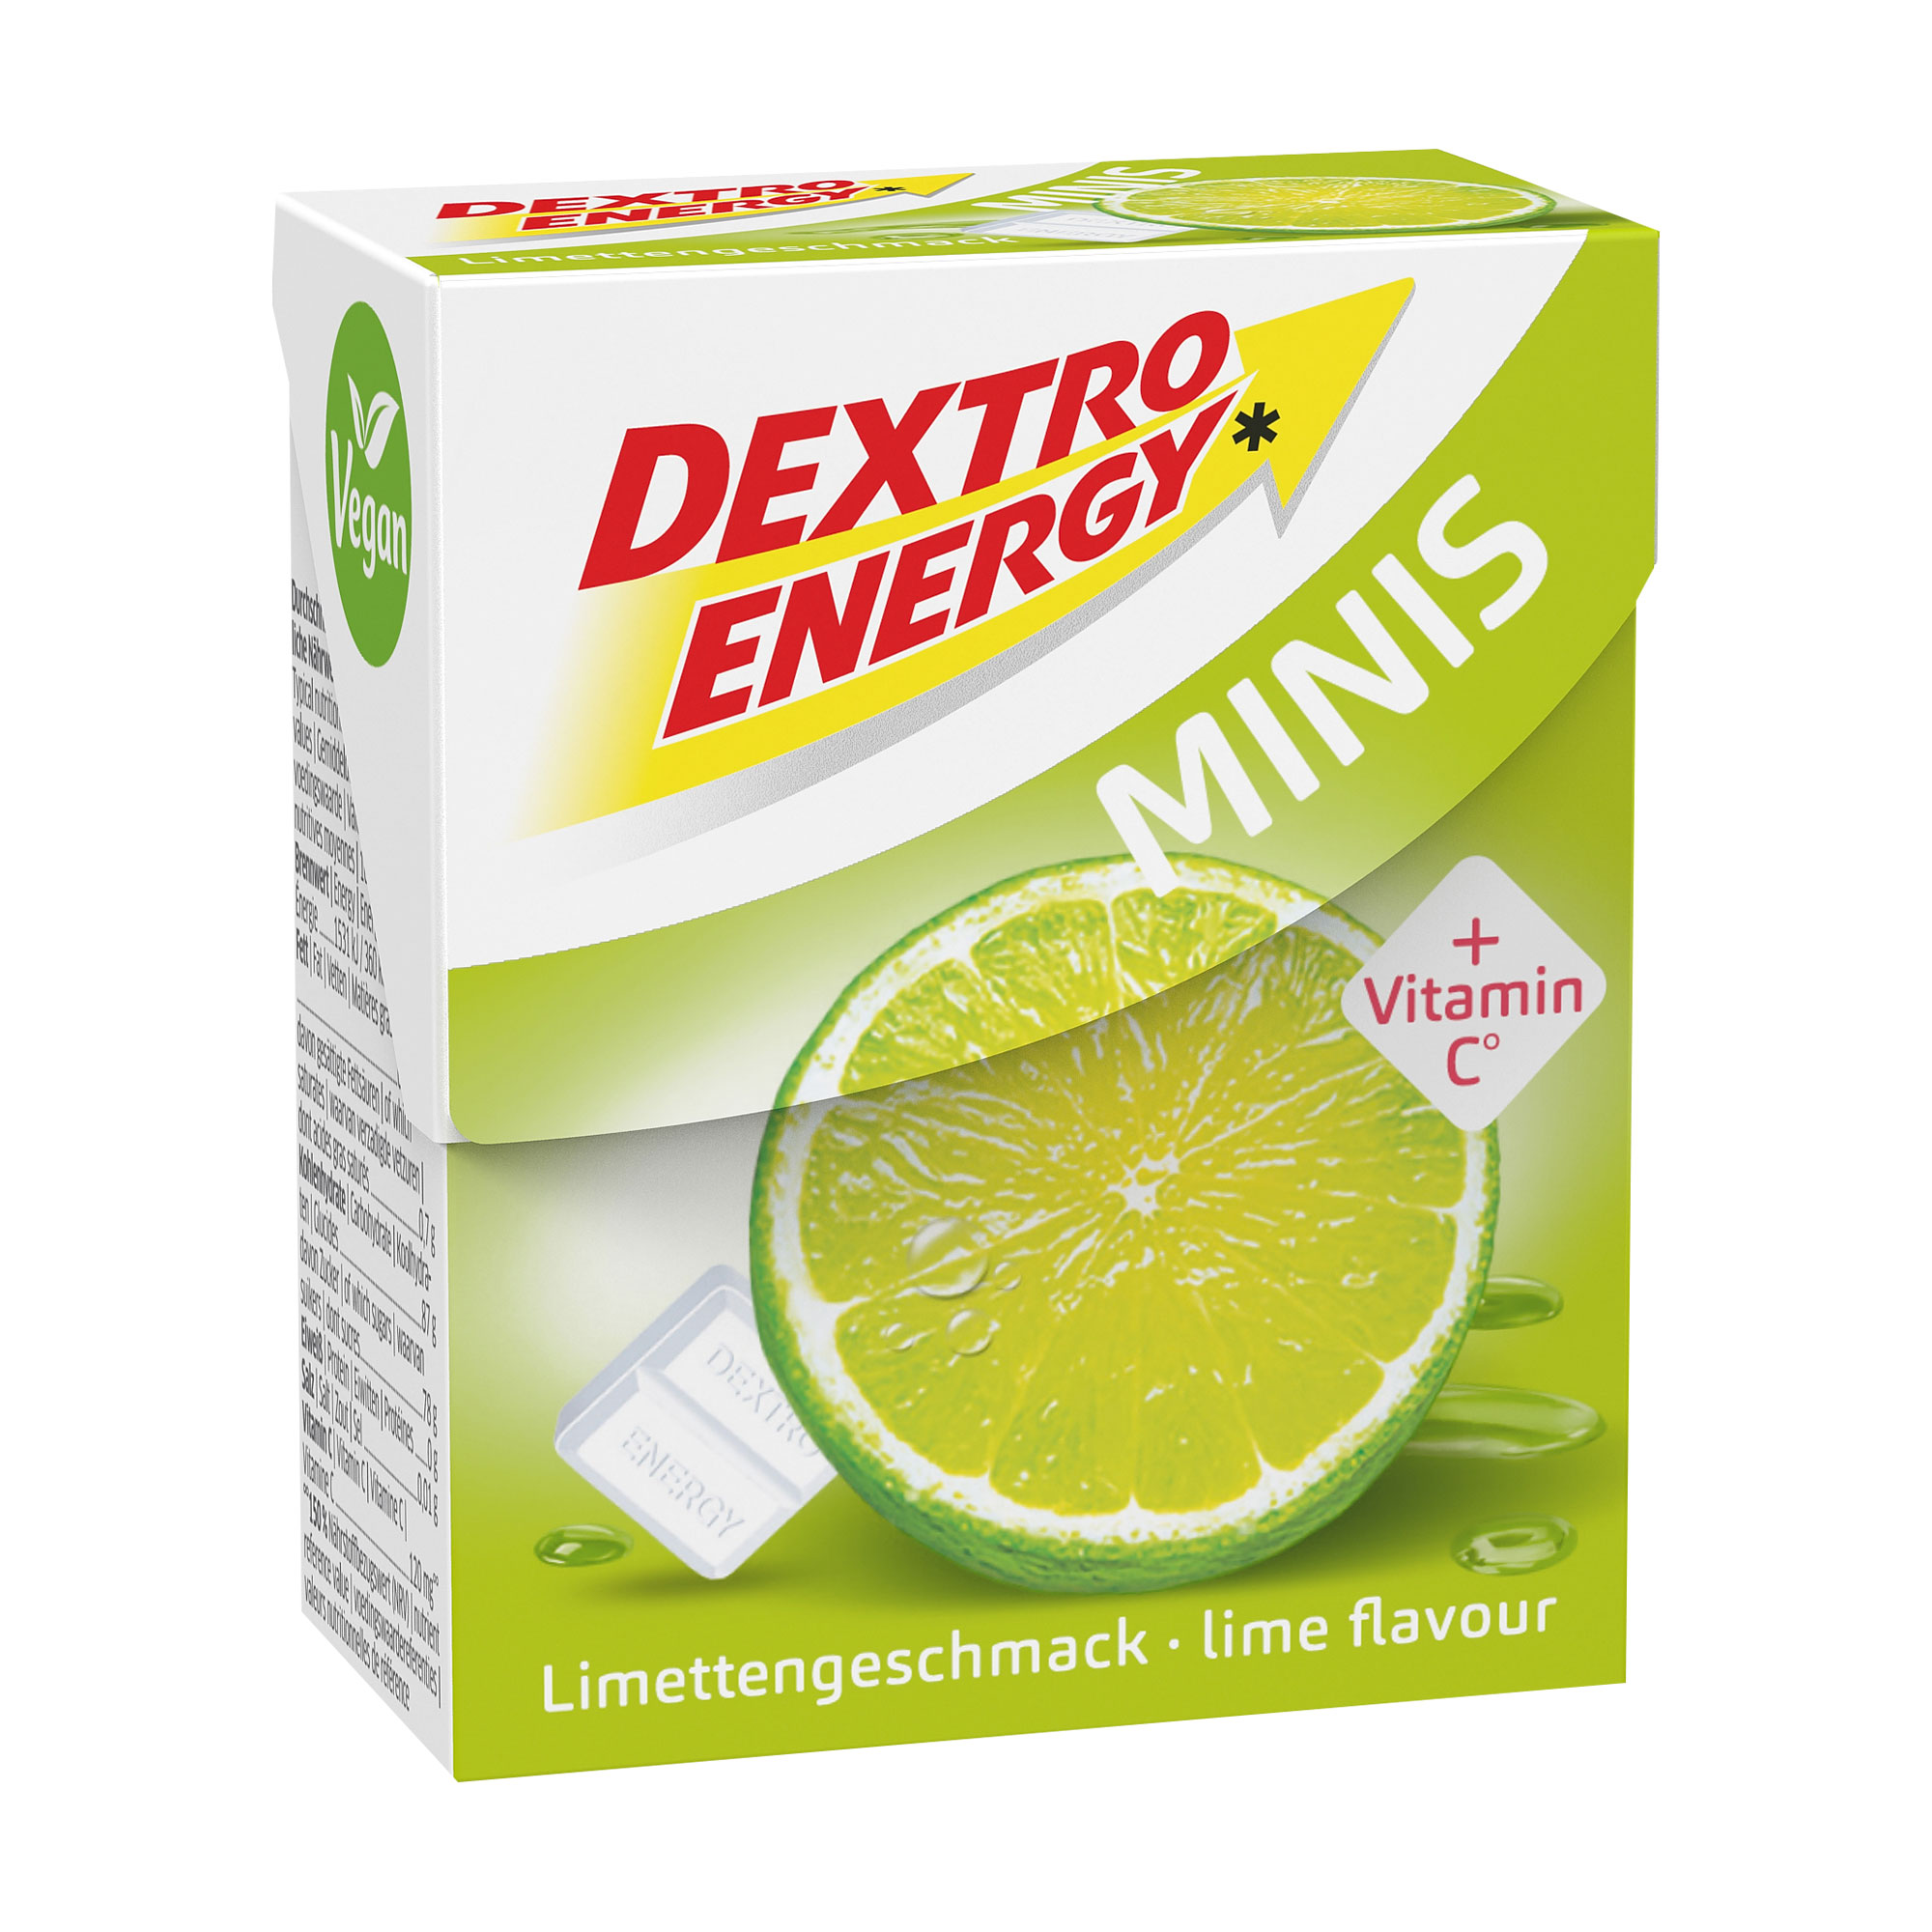 Wertvolle Dextrose mit fruchtig-frischem Limetten-Geschmack. In der praktischen Klick-Box.